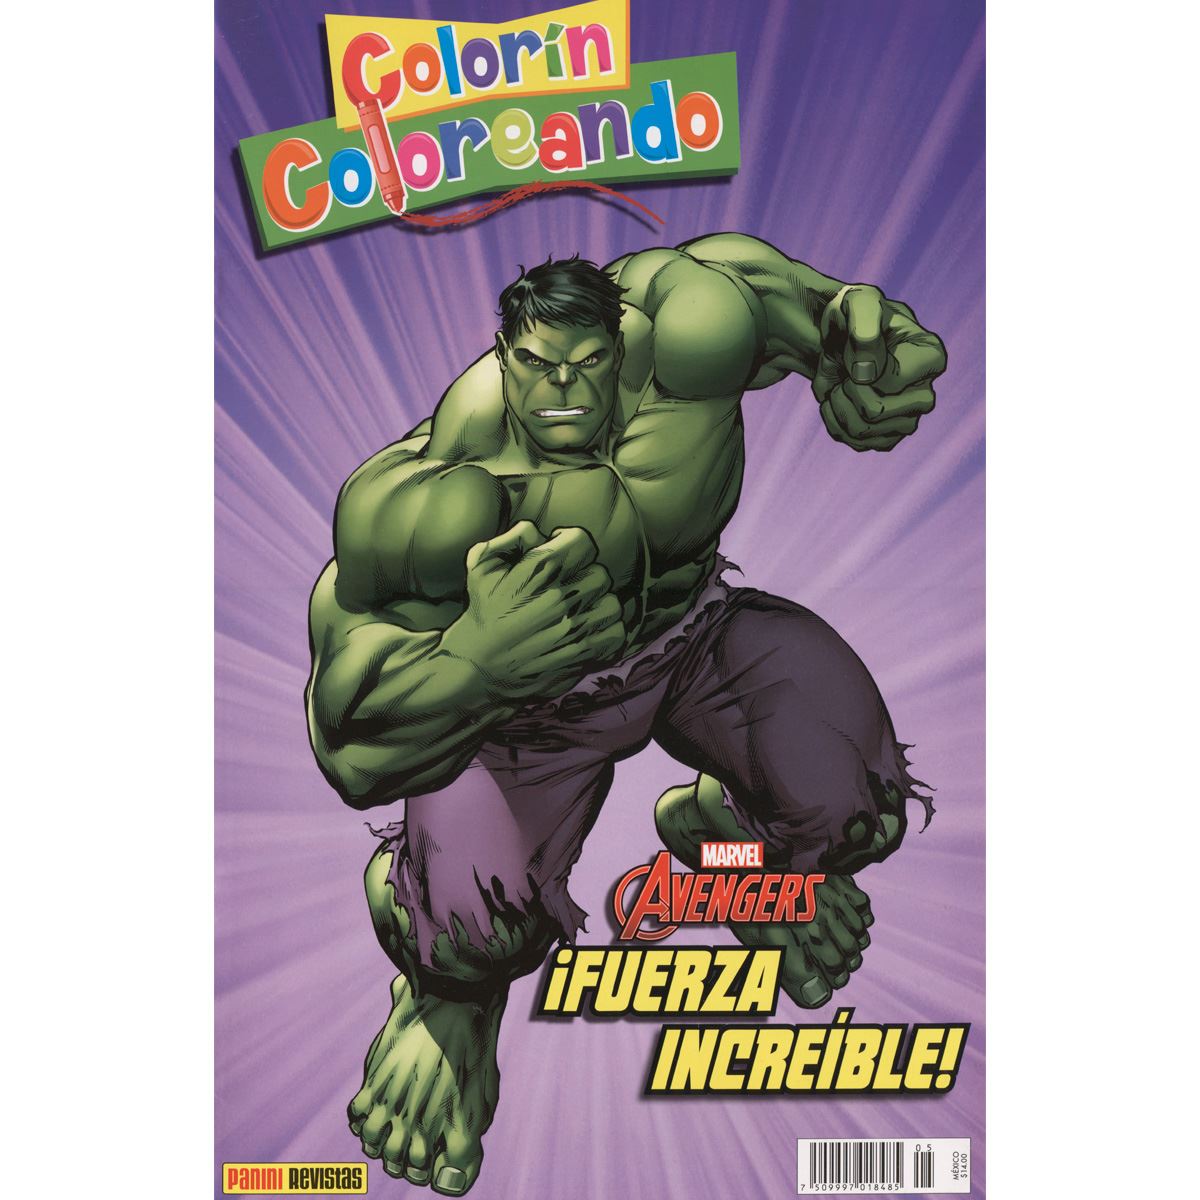 Comic colorin coloreando Marvel